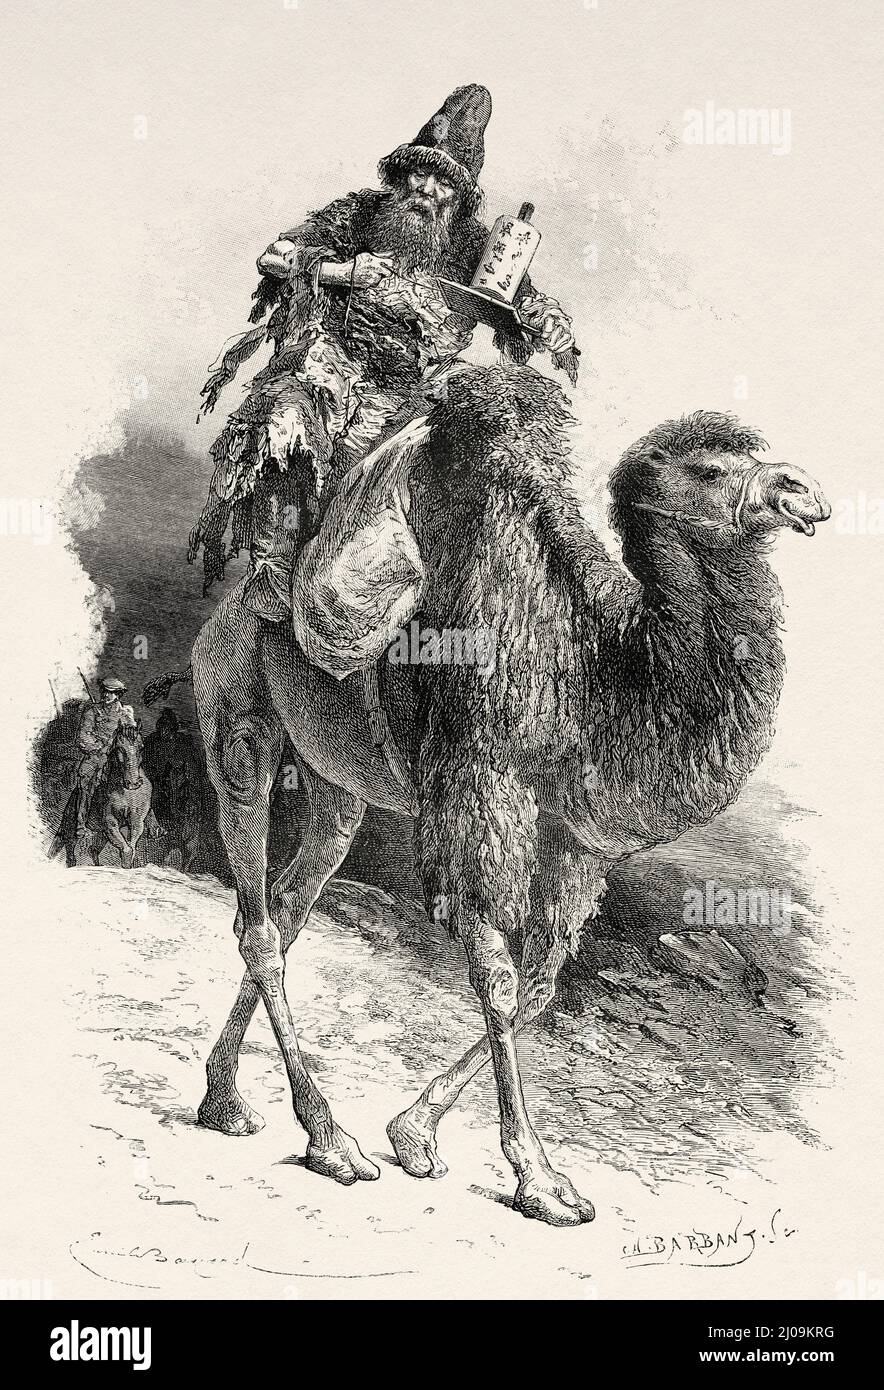 Tchoutoun-Dzamba Guide mongol des chameaux, Tibet. Asie. Voyage en Mongolie par Nikolai Mijailovich Przewalski en 1870-1873, le Tour du monde 1877 Banque D'Images